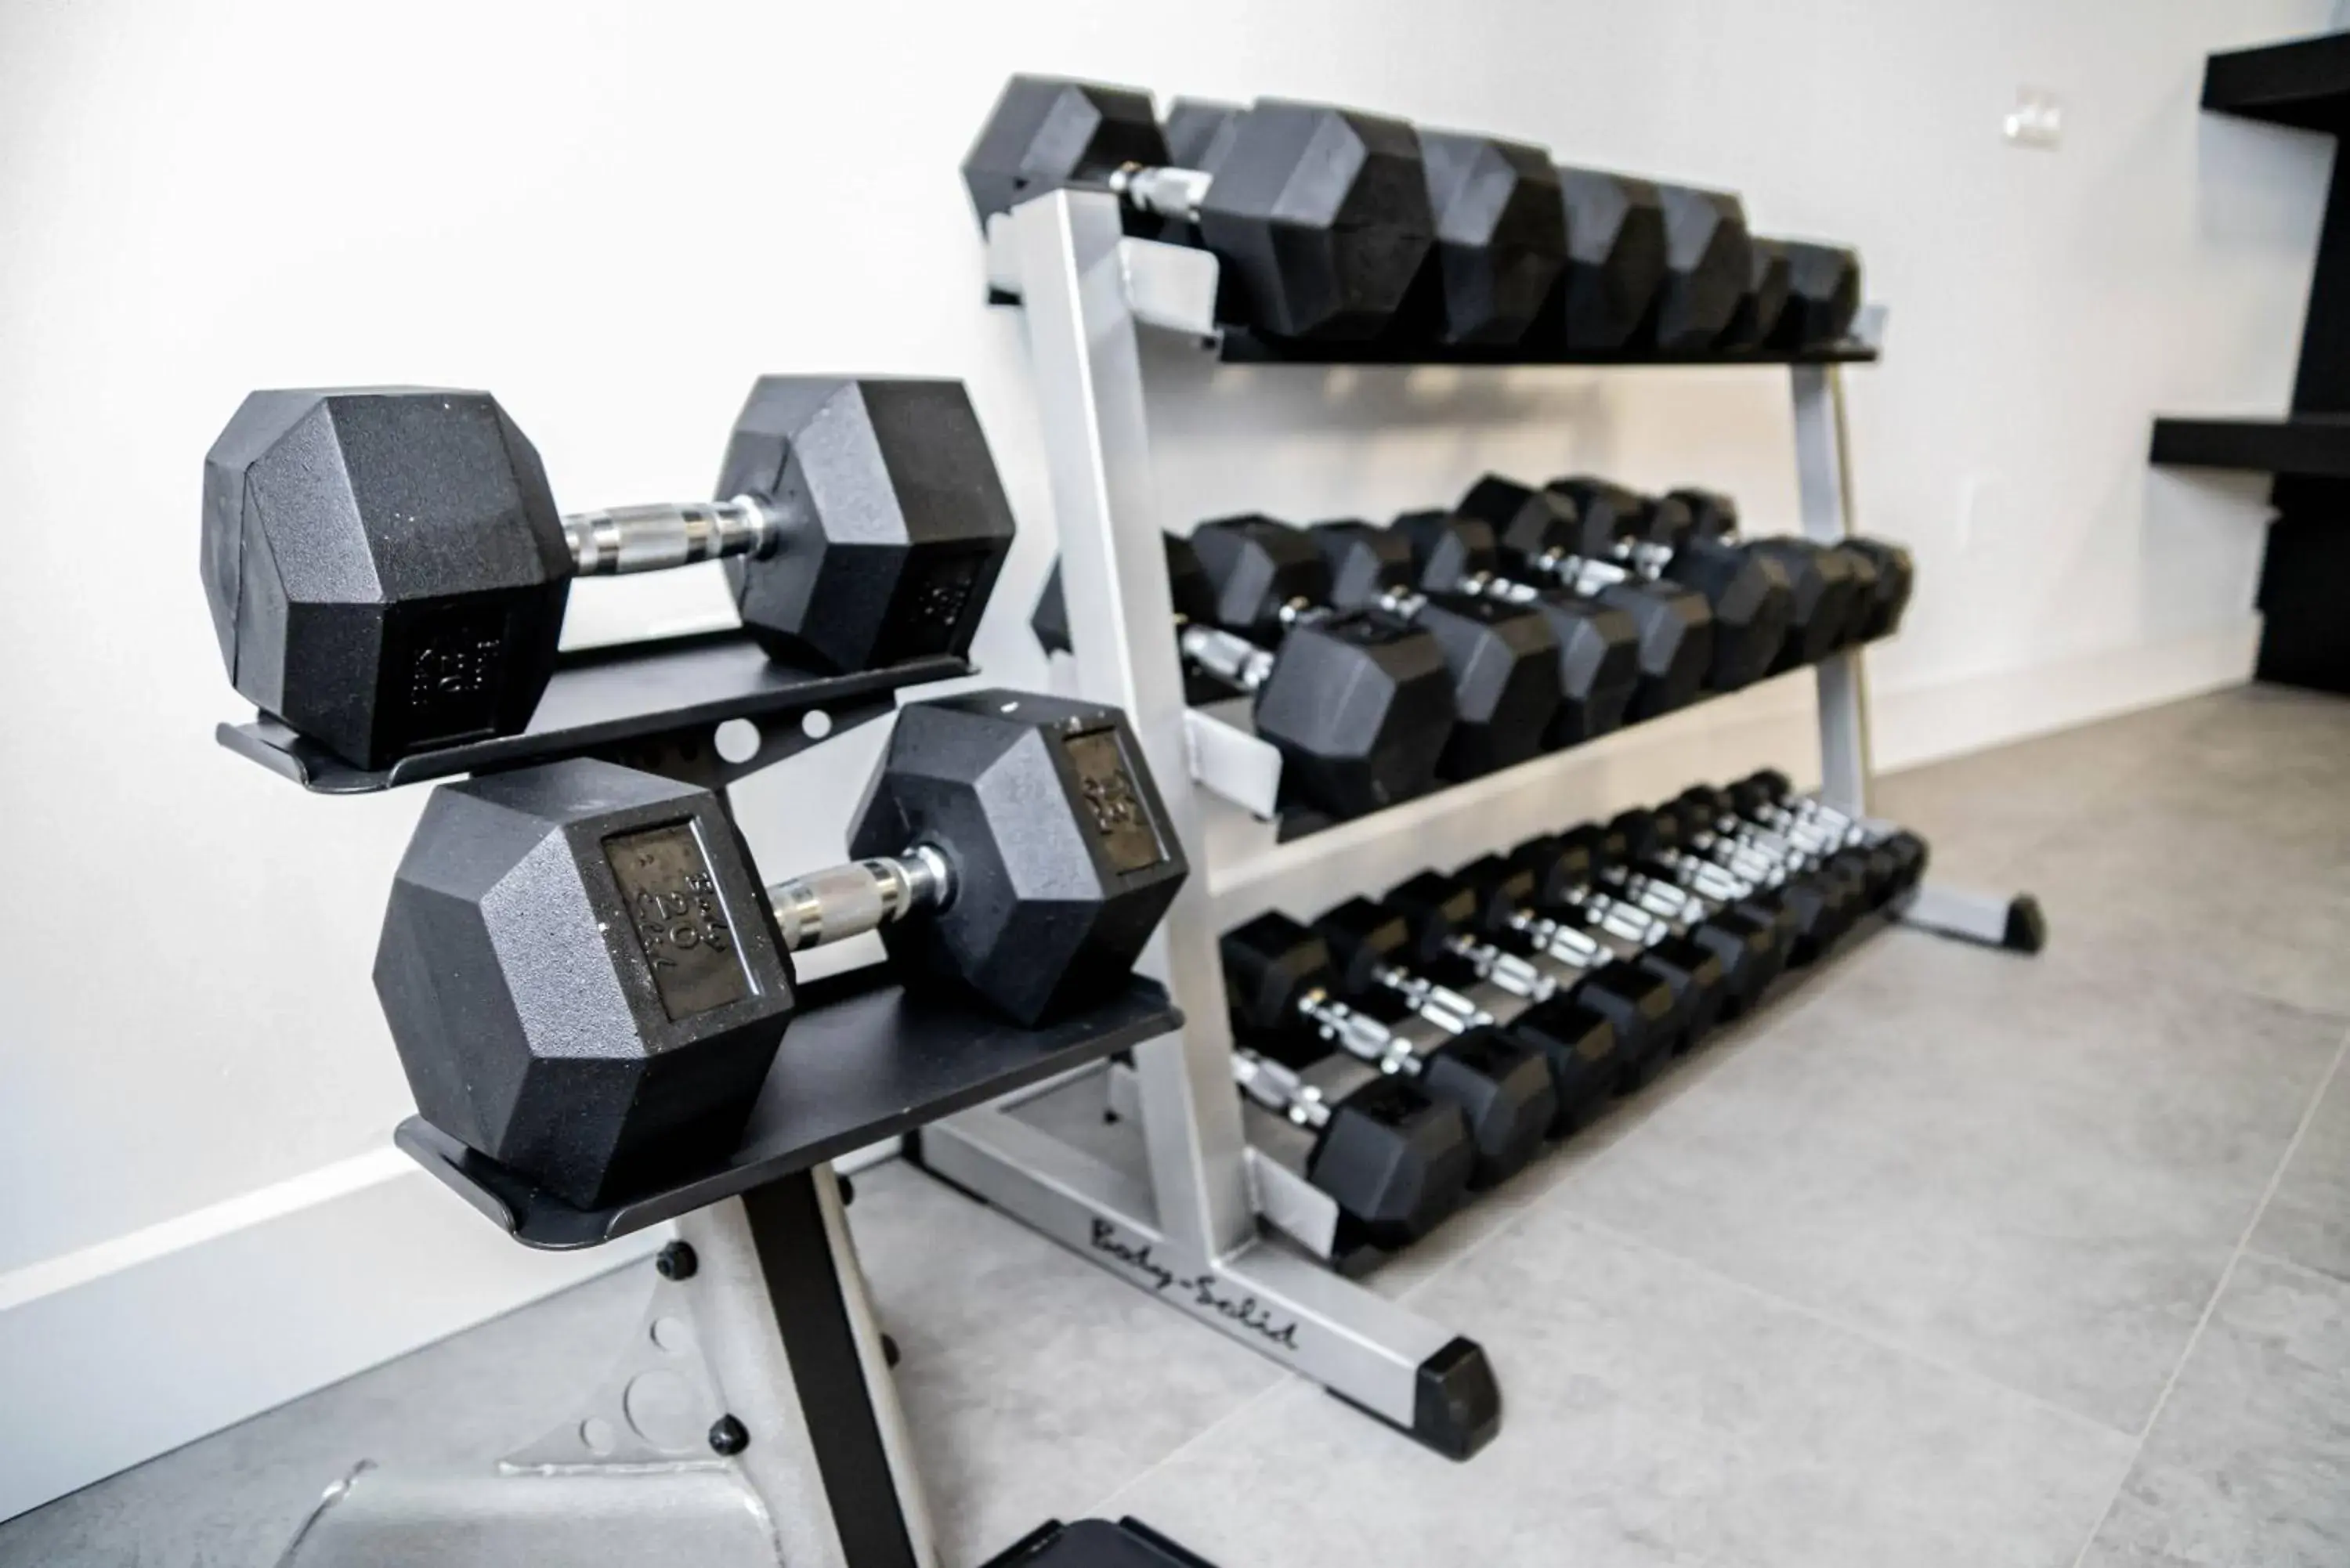 Fitness centre/facilities, Fitness Center/Facilities in Casa Bodhi Marbella